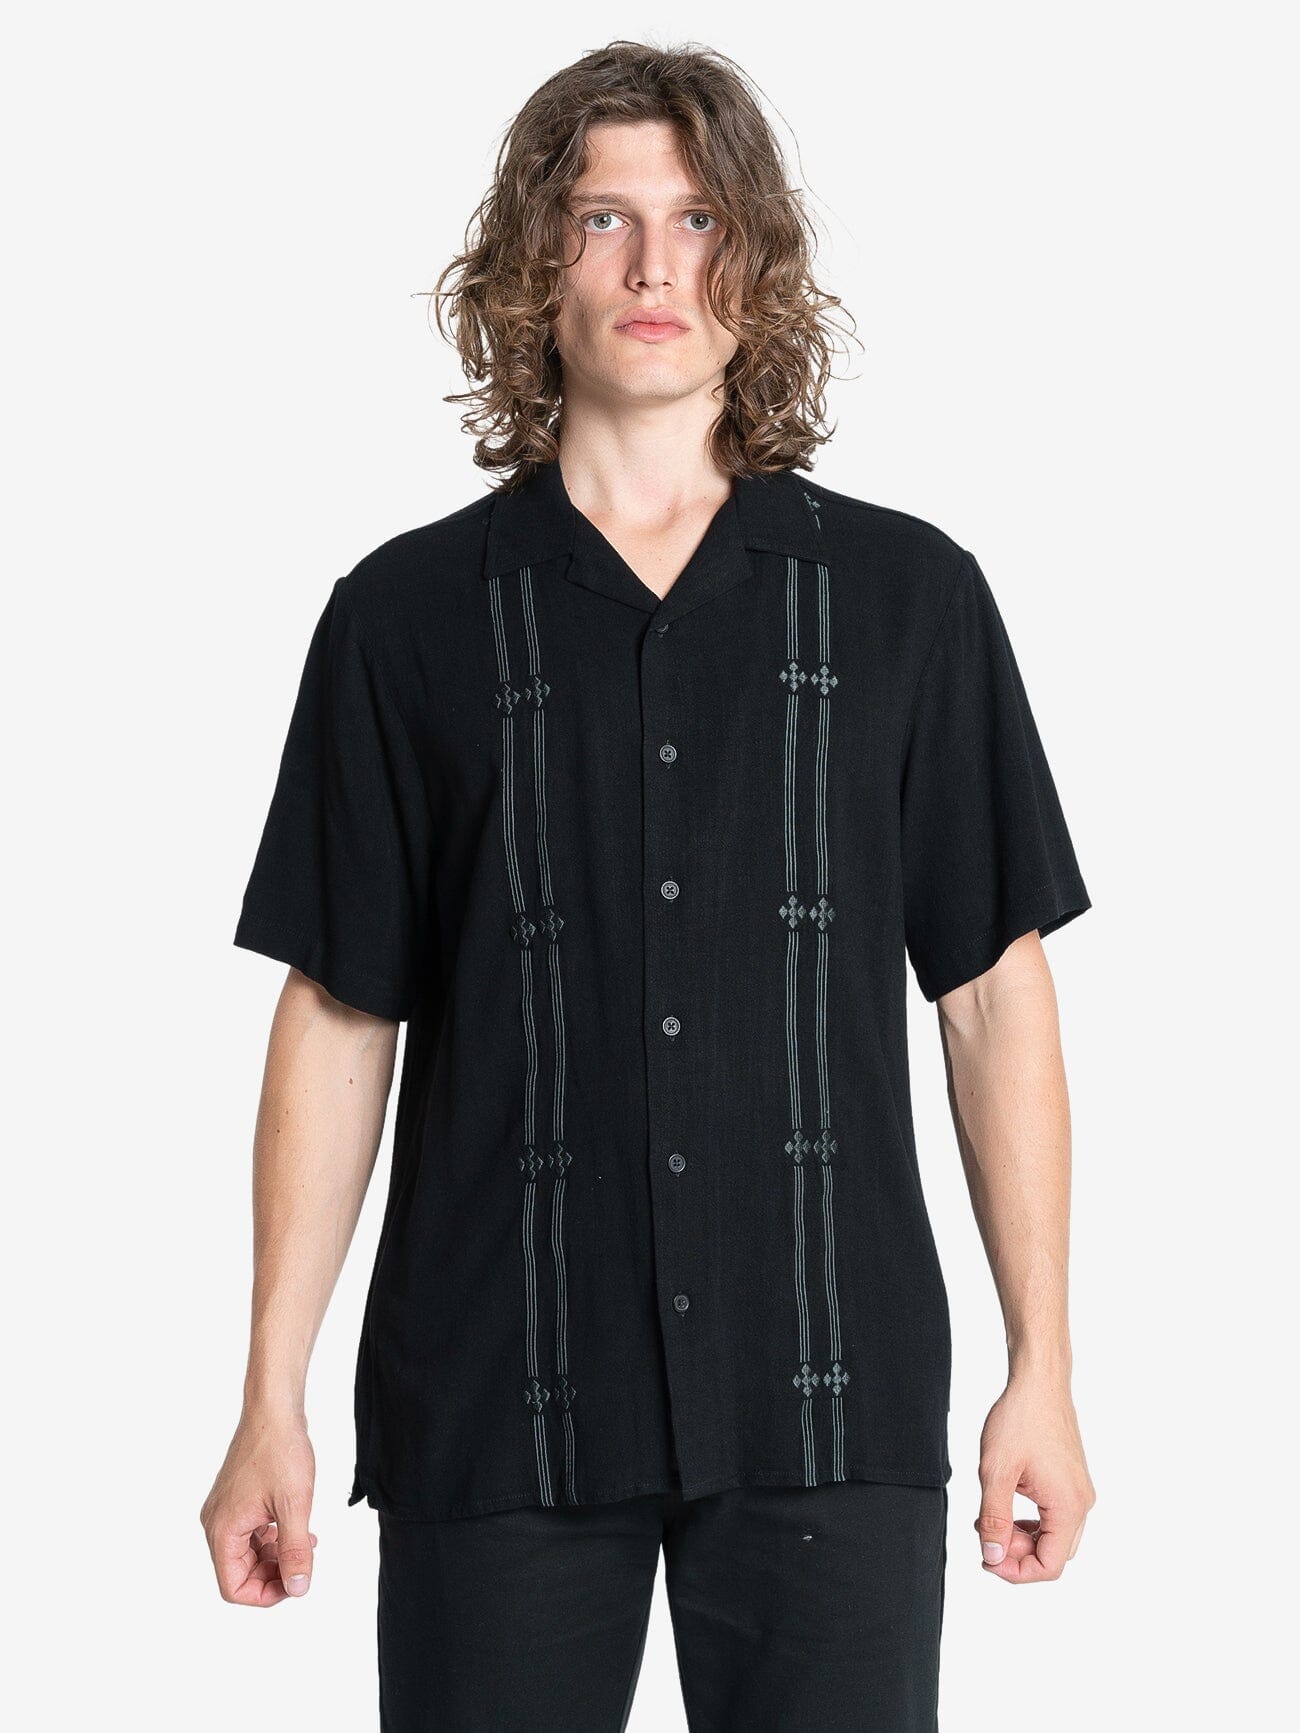 Arch Bowling Shirt - Black XS